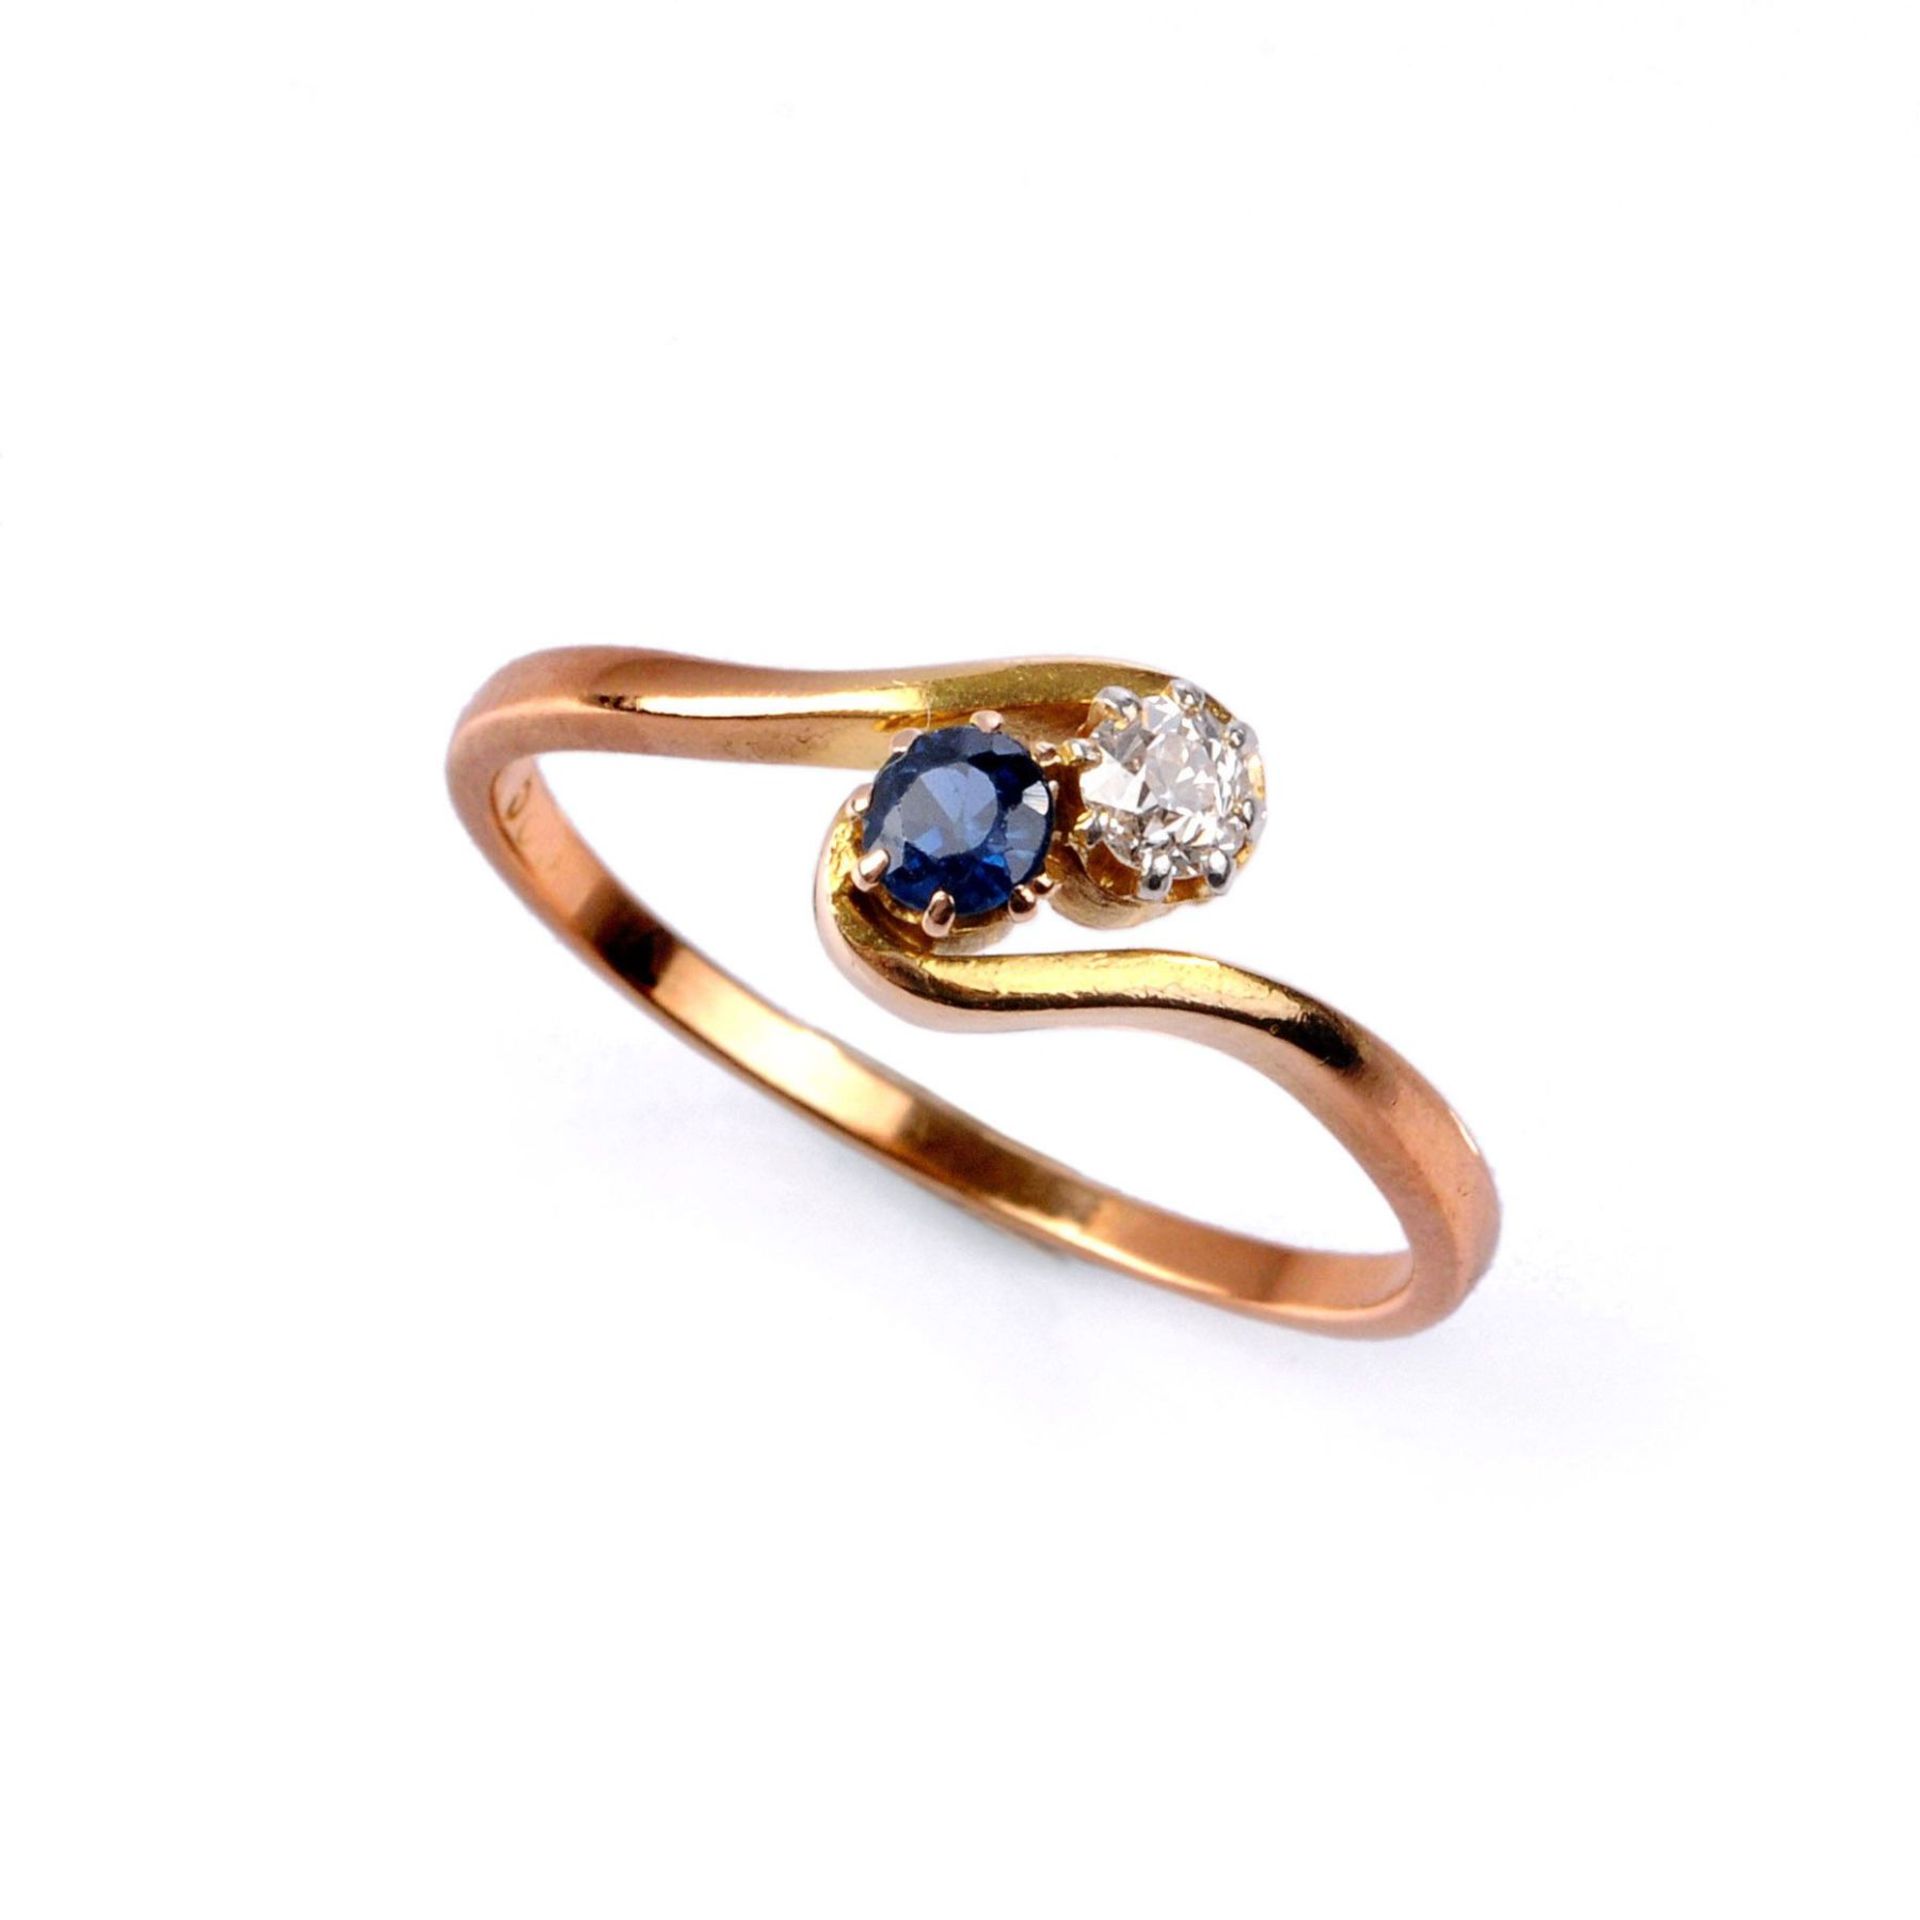 Toi-et-Moi-Ring mit Diamant und Saphir. Anfang 20. Jh.585er Gelbgold. Der Ringkopf in Form schmaler,